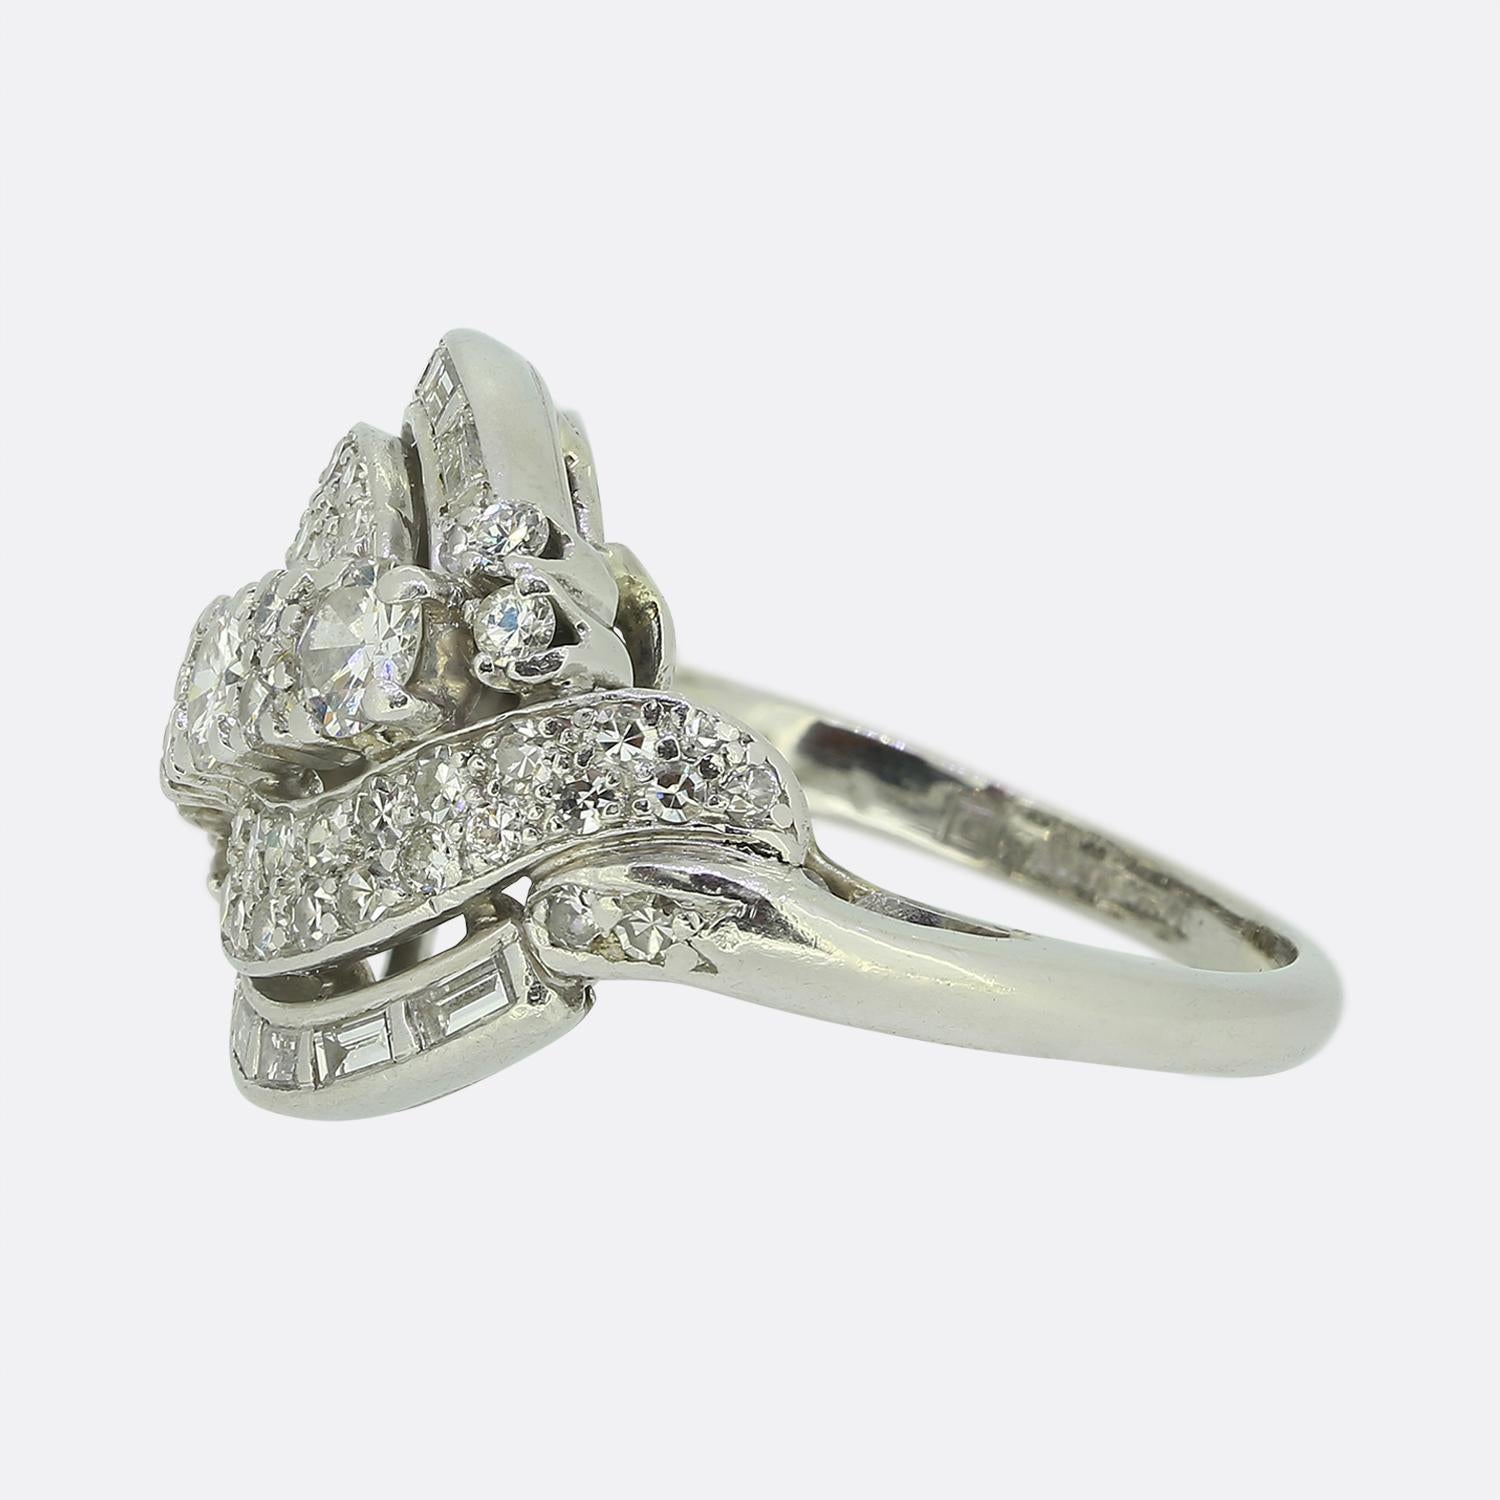 Il s'agit d'une très belle bague en diamant datant d'environ 1940. La bague est fabriquée en platine et présente un mélange de diamants européens anciens, de diamants de taille huit et de diamants baguettes. Les trois plus gros diamants ronds sont